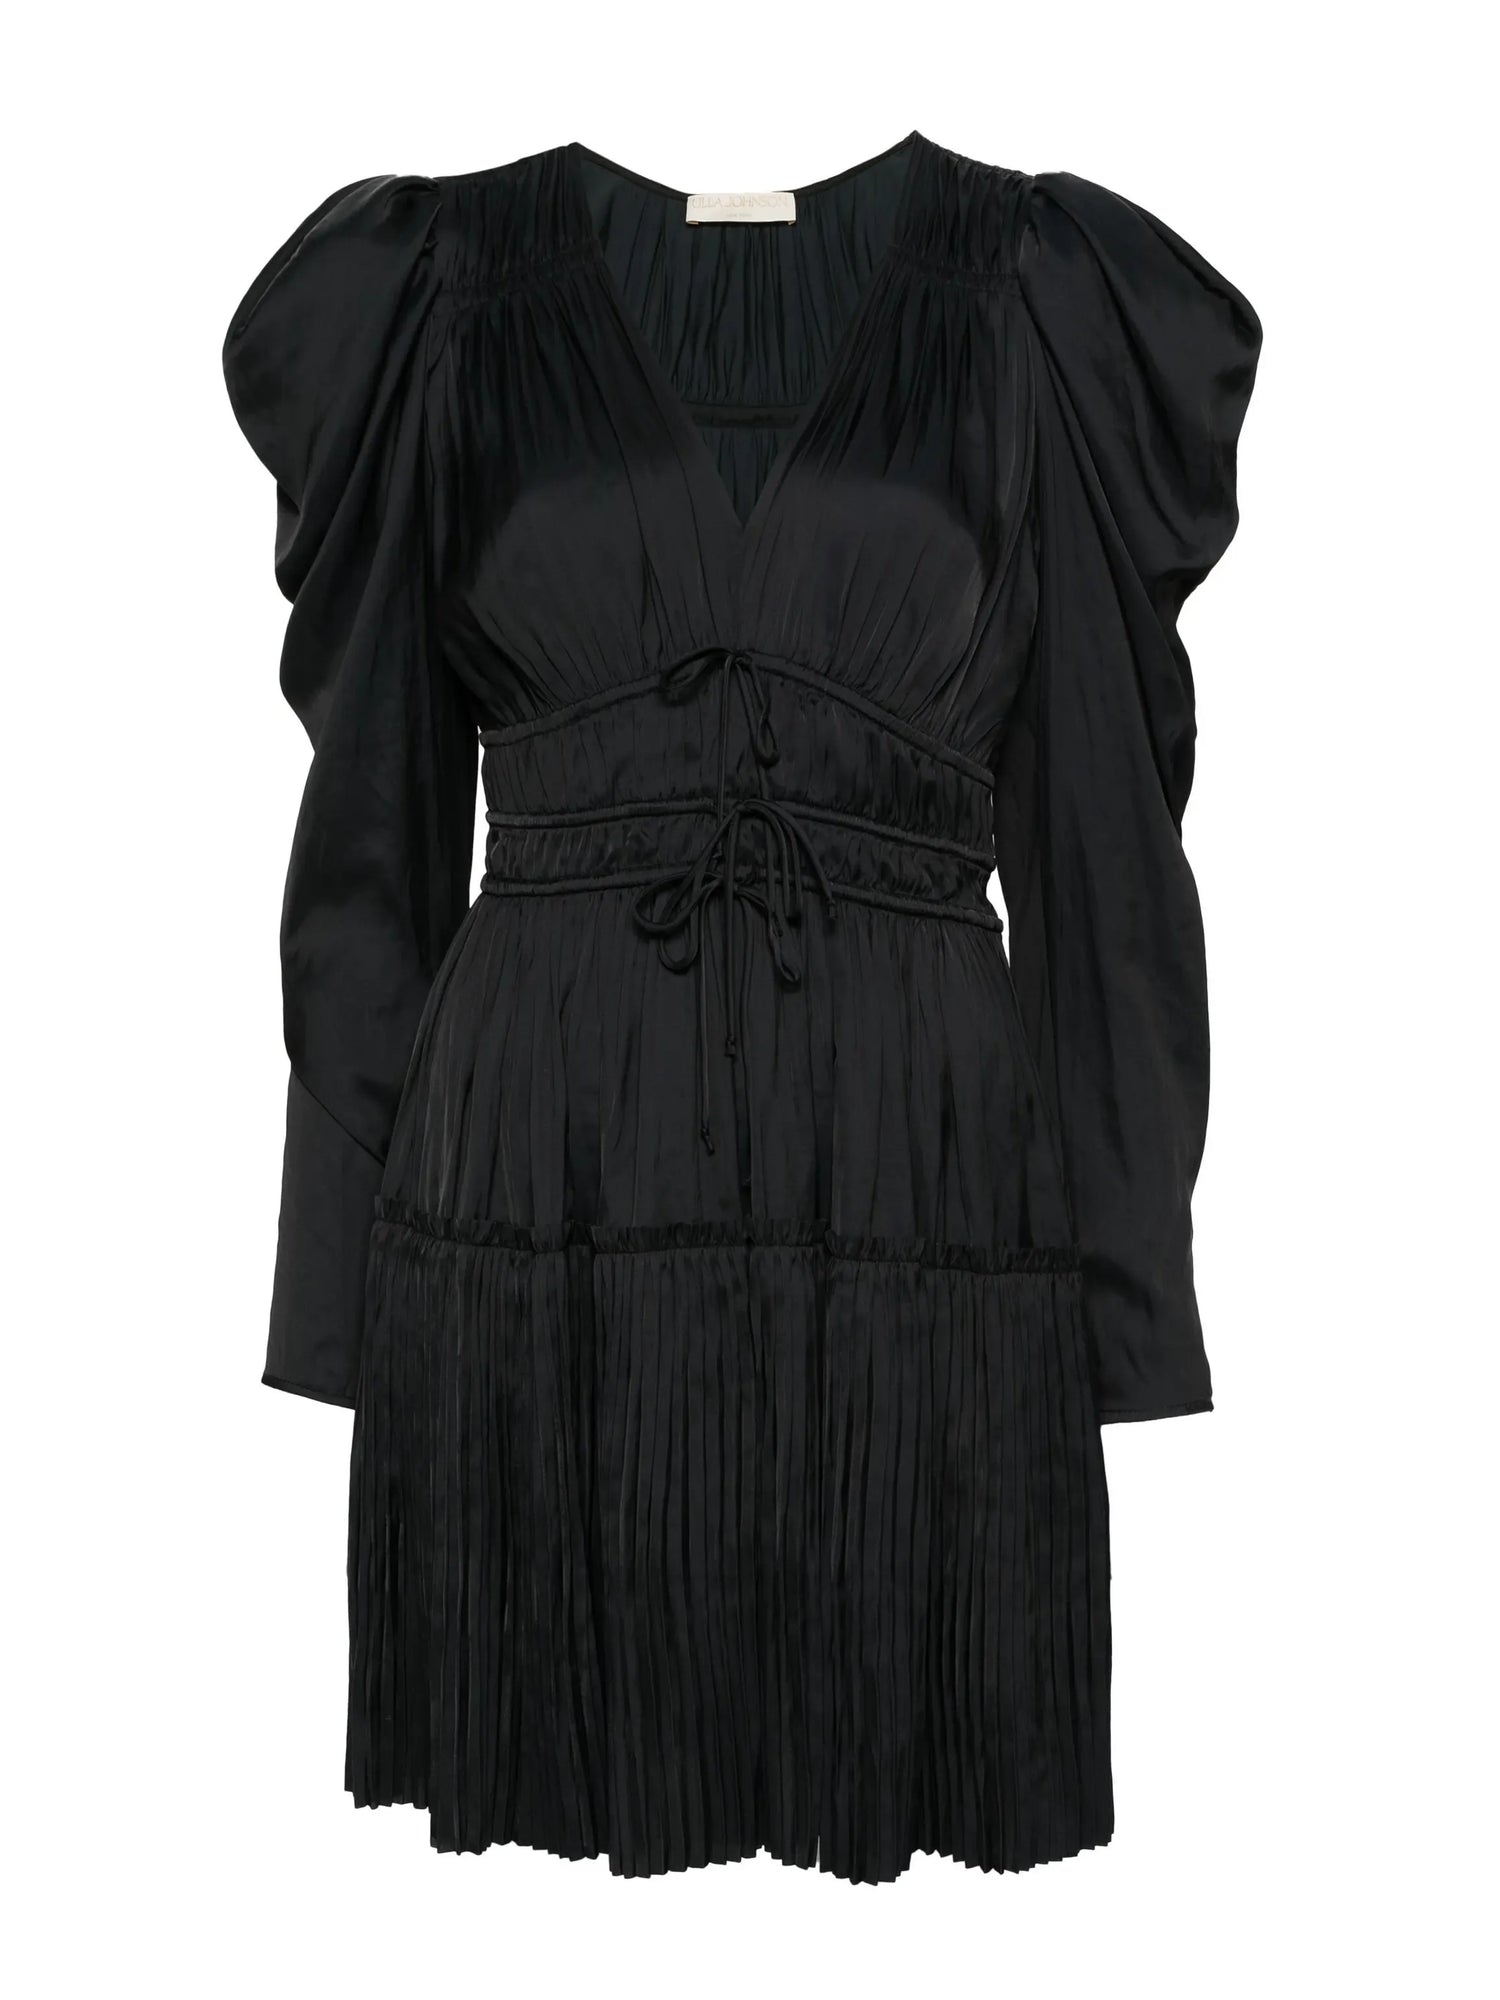 Lu Mini Dress, black